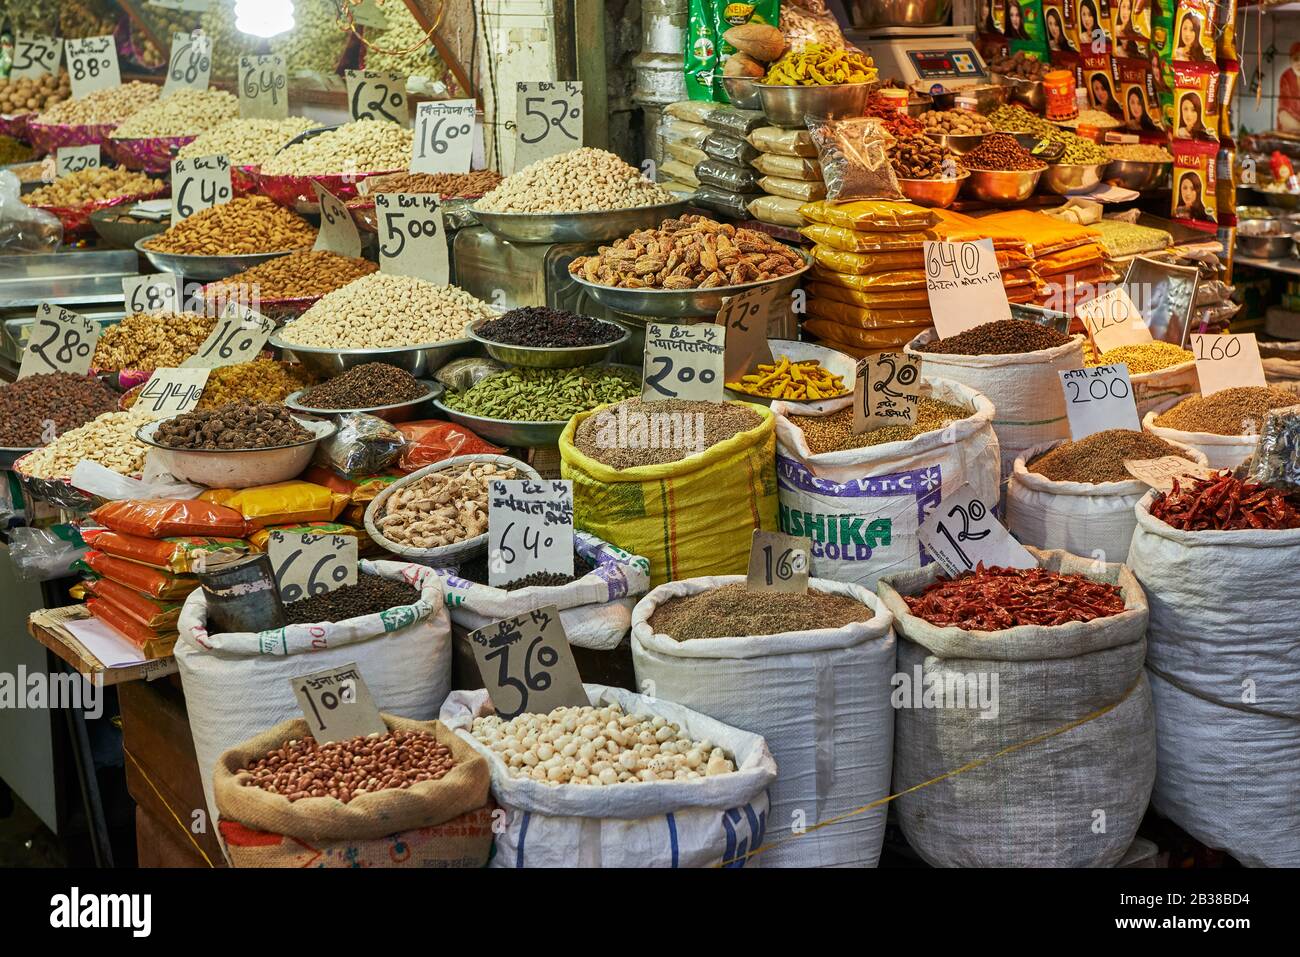 Geschaeft auf Gewuerzmarkt in Old Delhi, Geschaefte in der Swami Vivekanand Marg Strasse, Indien |shop on Old Dehli spice market, shops in Swami Vivek Stock Photo